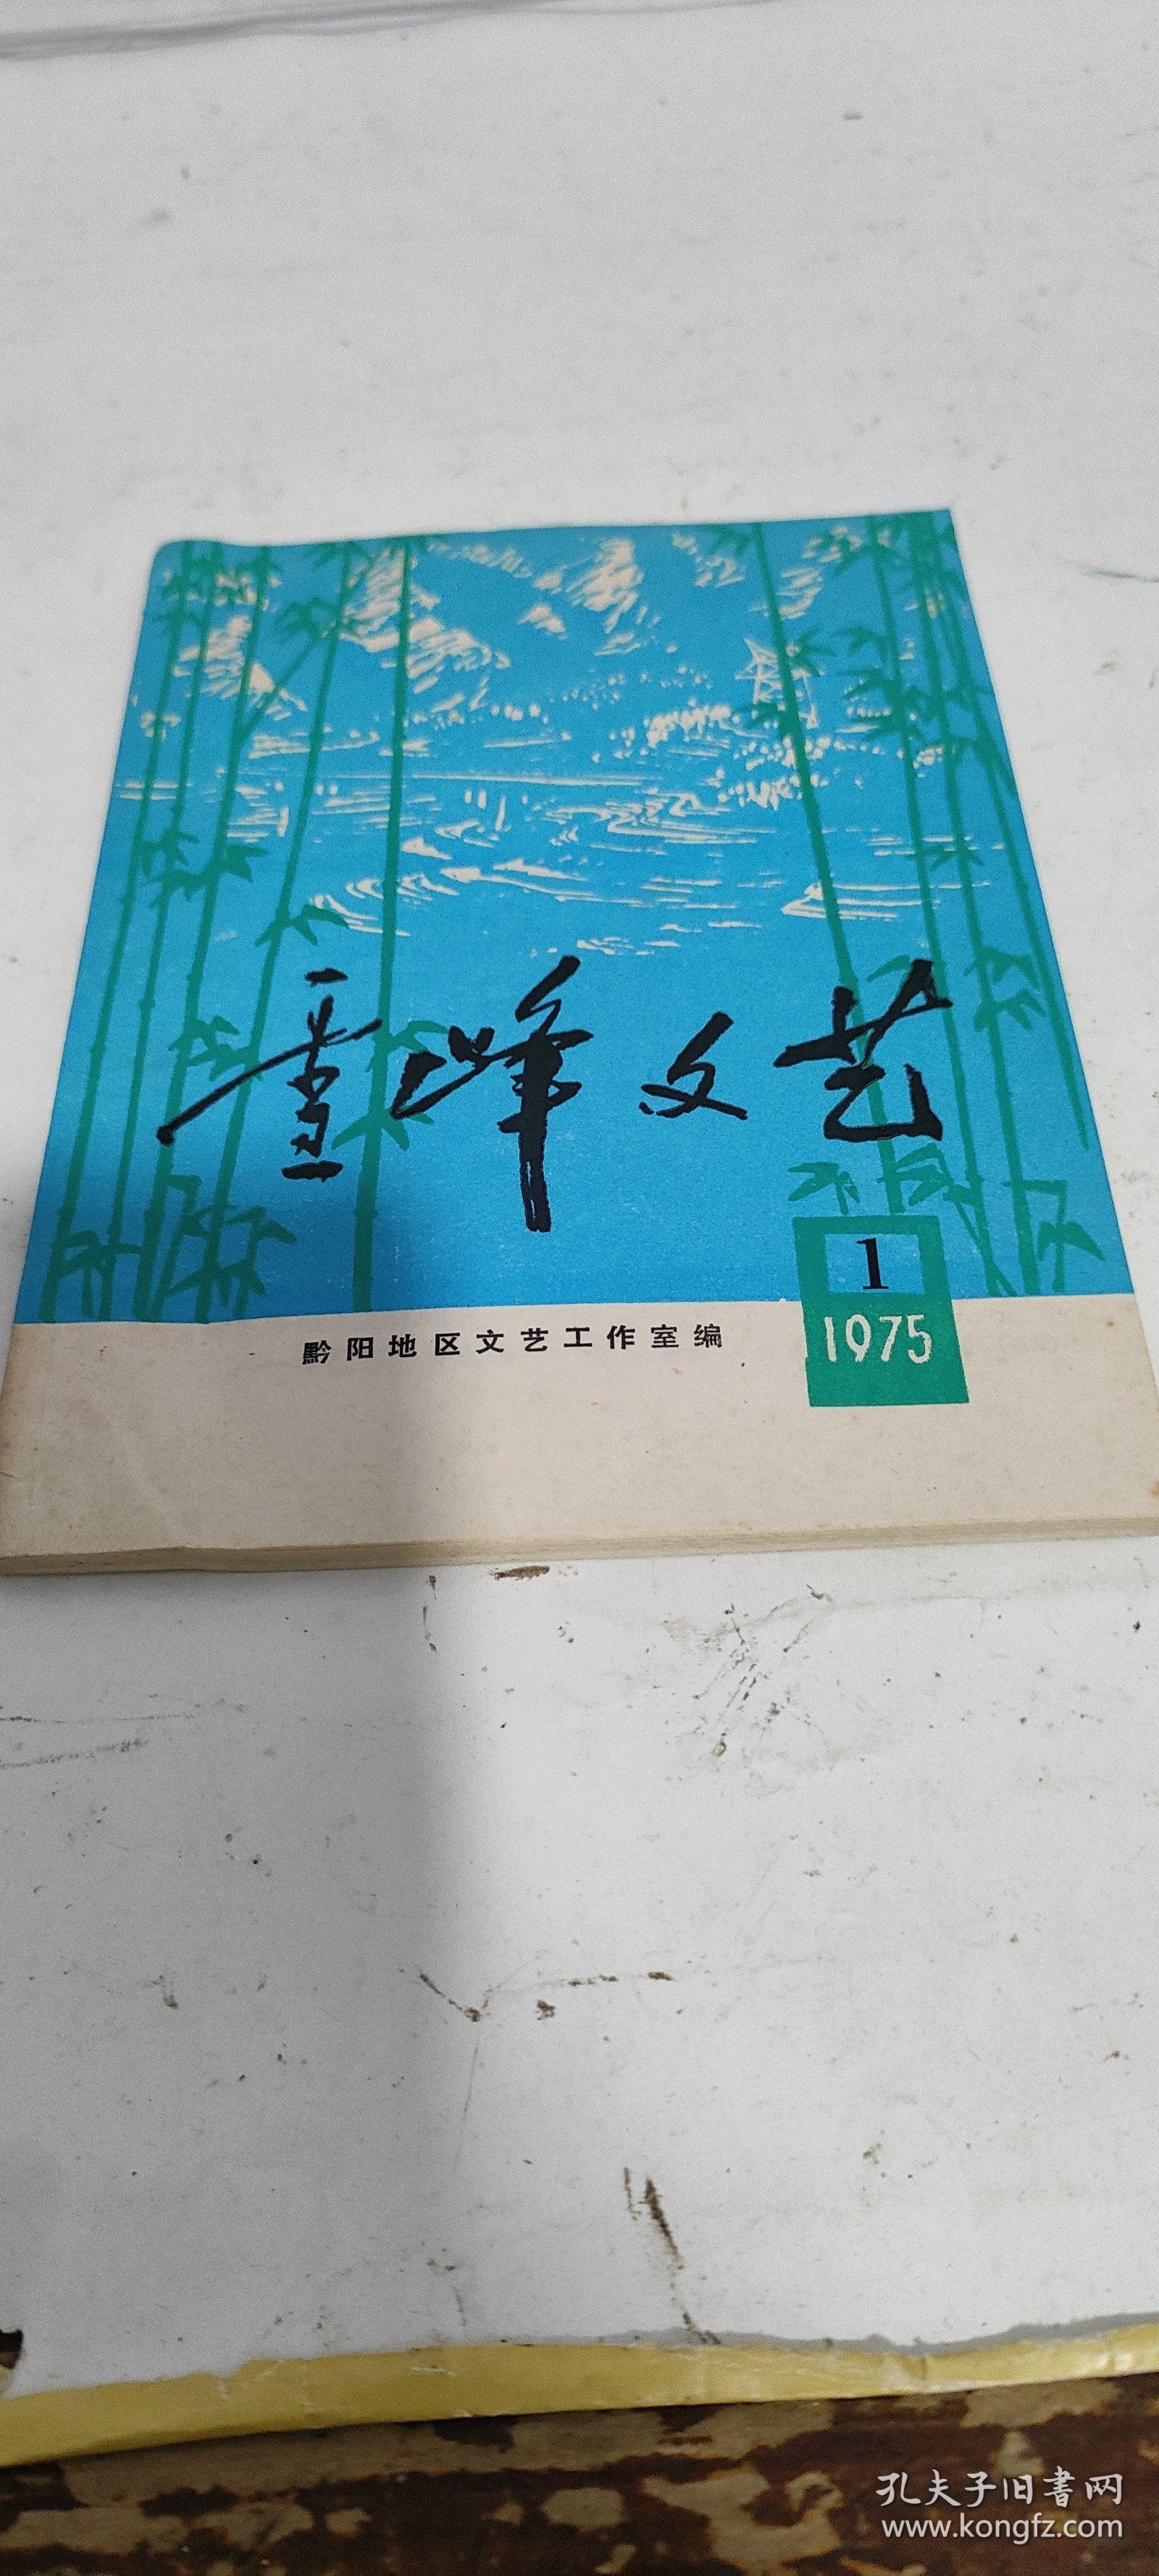 雪峰文艺1975年第1期，不知是否创刊号，有诗、歌曲，小品等